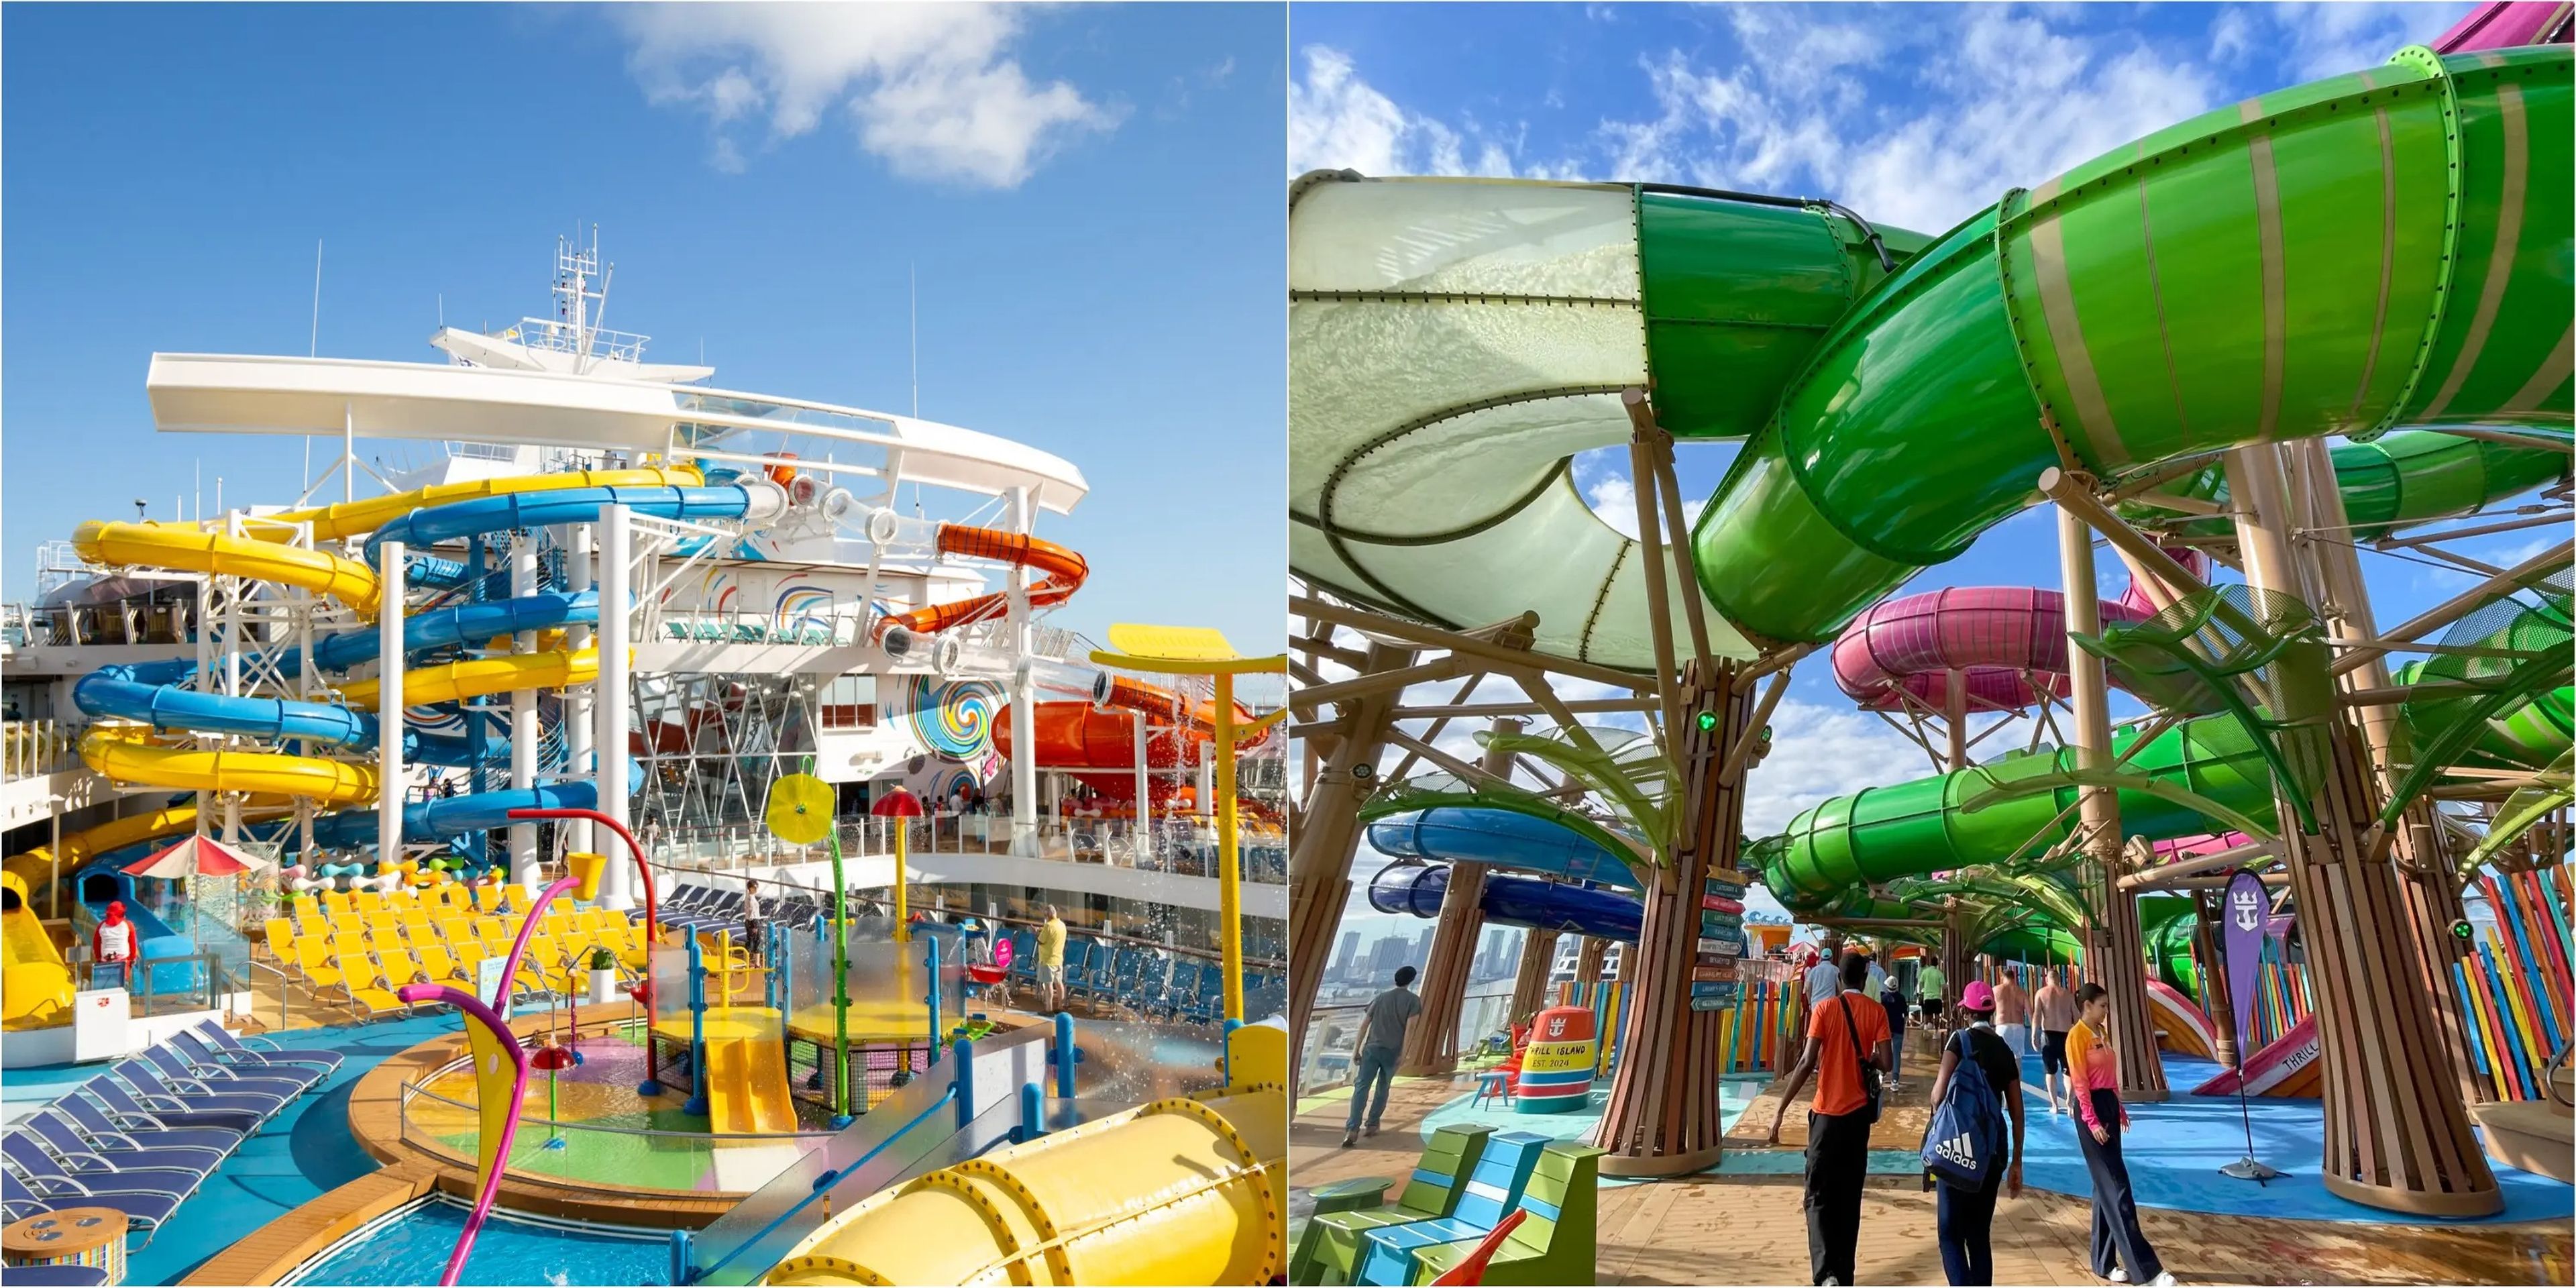 Parque acuático infantil y toboganes de Wonder of the Seas (izquierda) y parque acuático de Icon of the Seas (derecha).